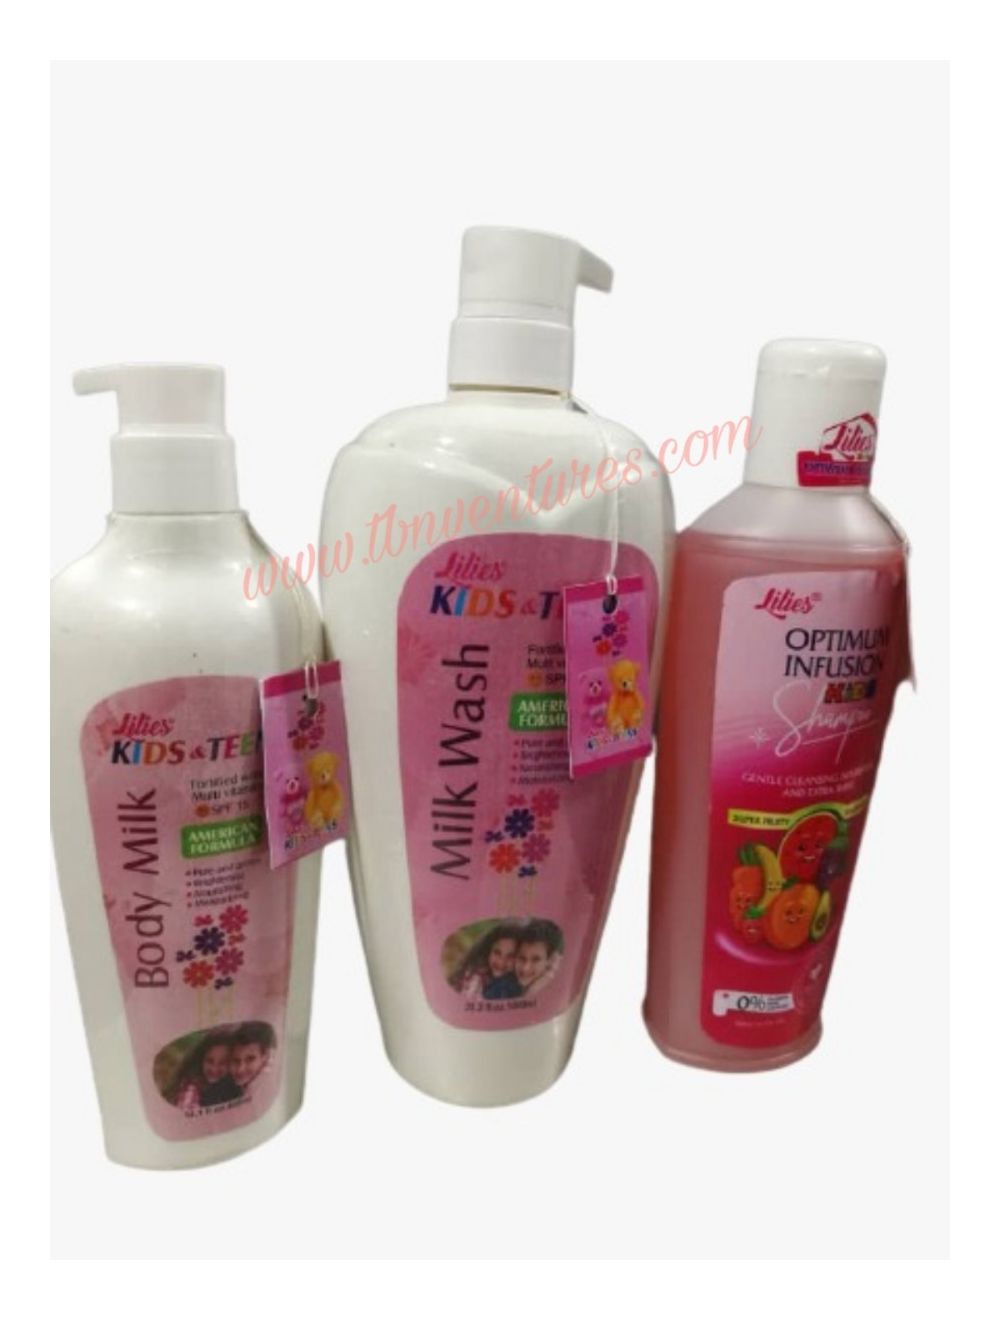 toetje Onbekwaamheid waarde Lilies Kids & Teens Shower Gel, Lotion & optimum infusion kids shampoo |TBN  Ventures